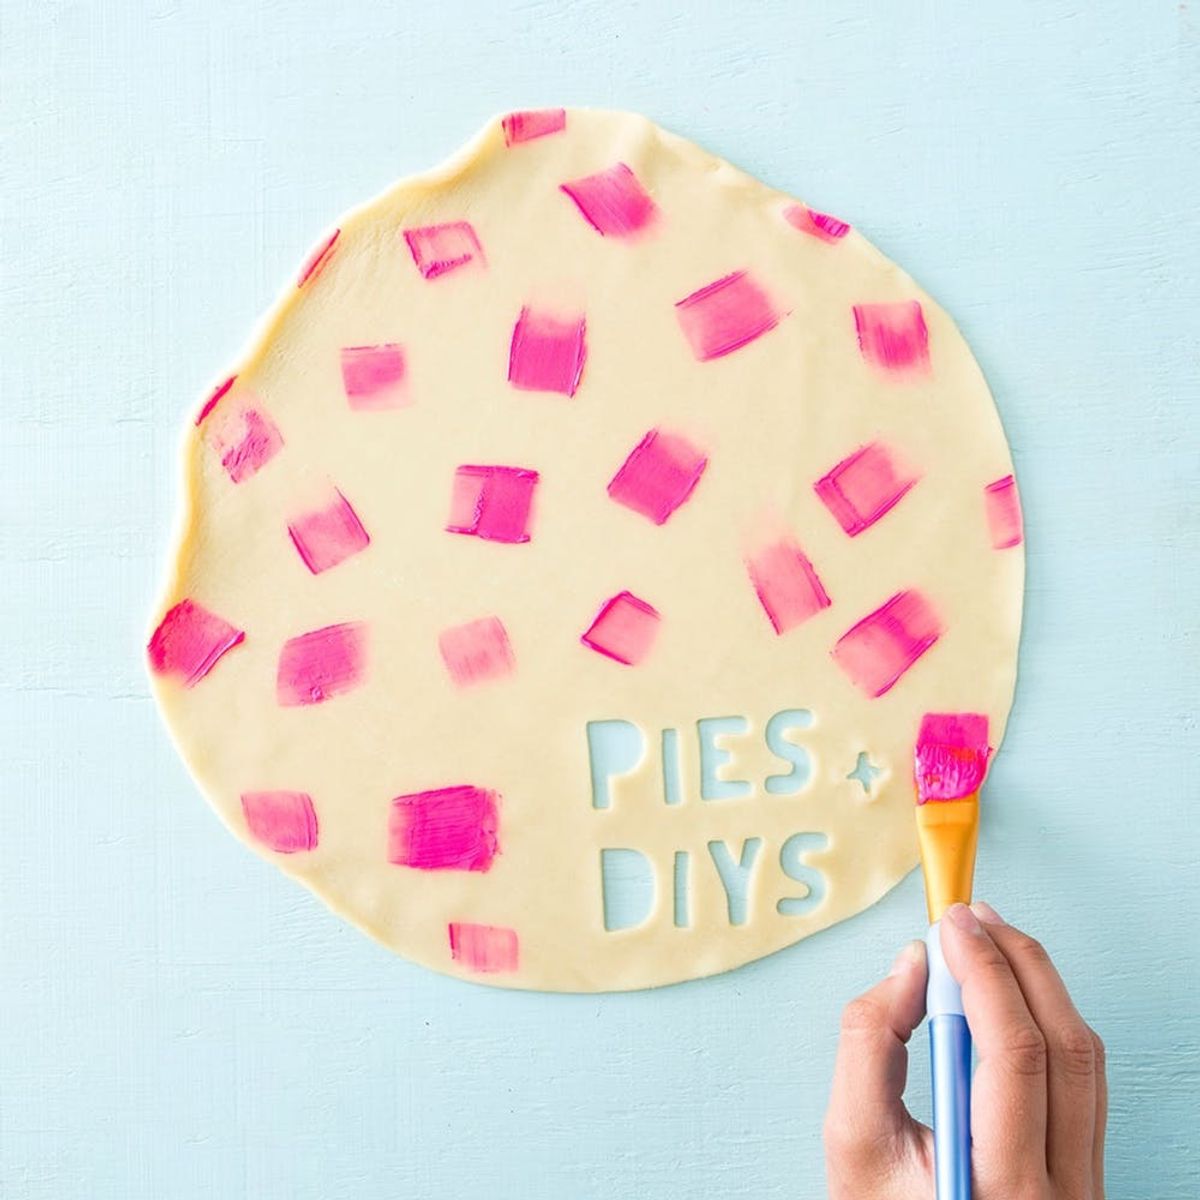 Pies + DIY: Summer Essentials